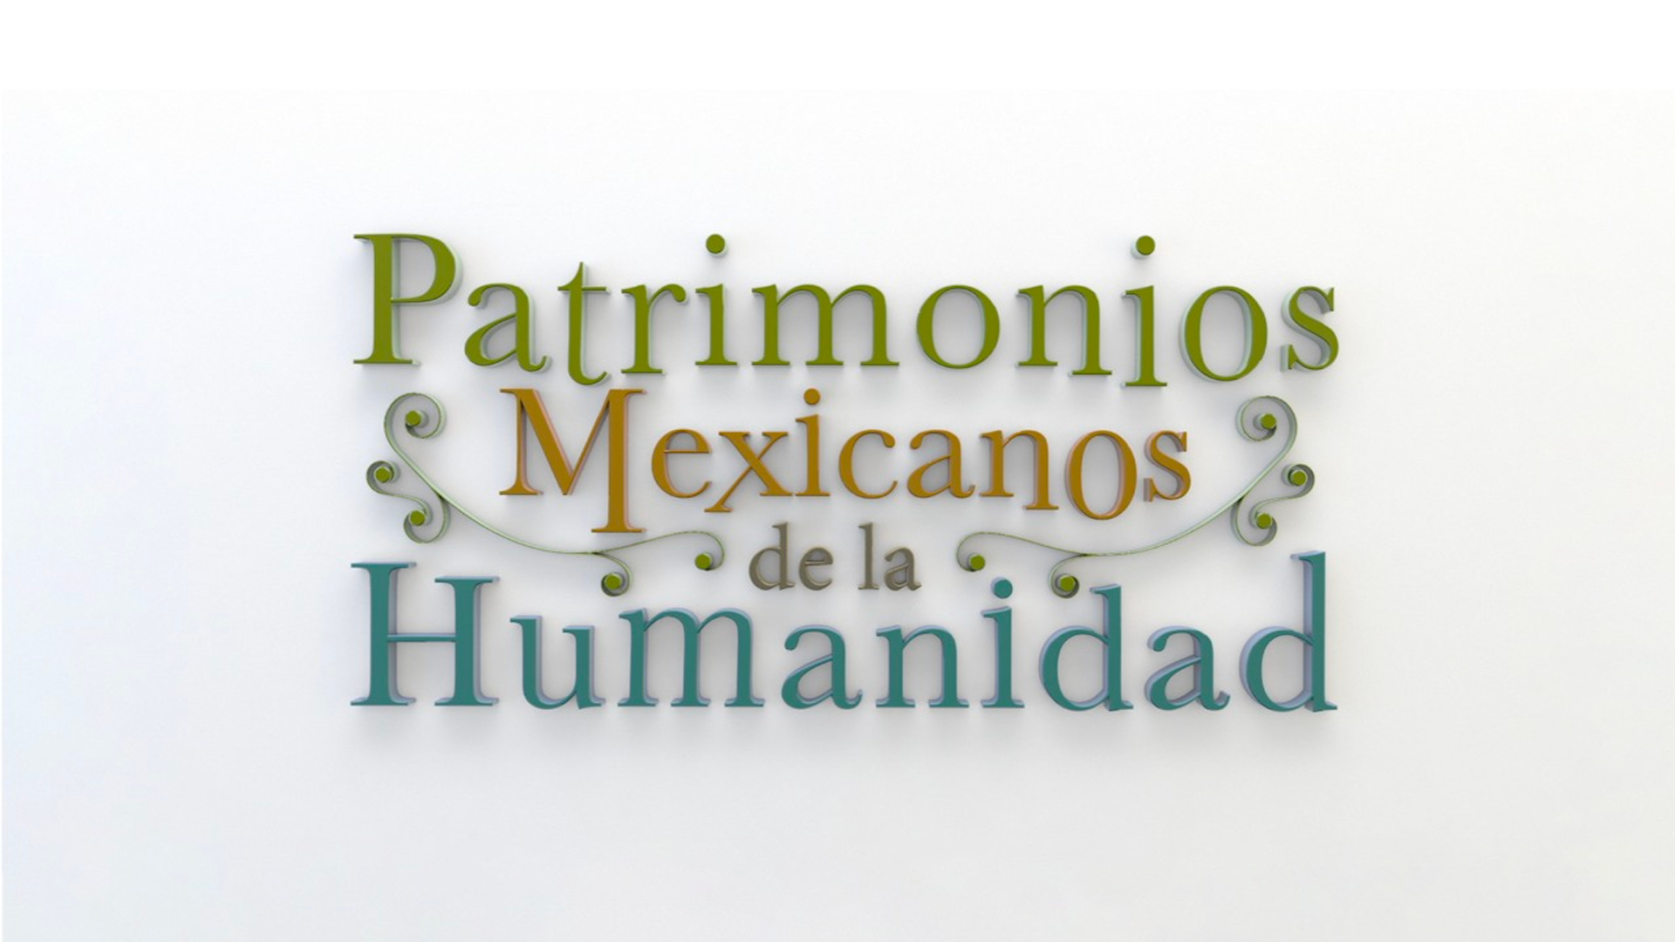 Patrimonios Mexicanos de la Humanidad